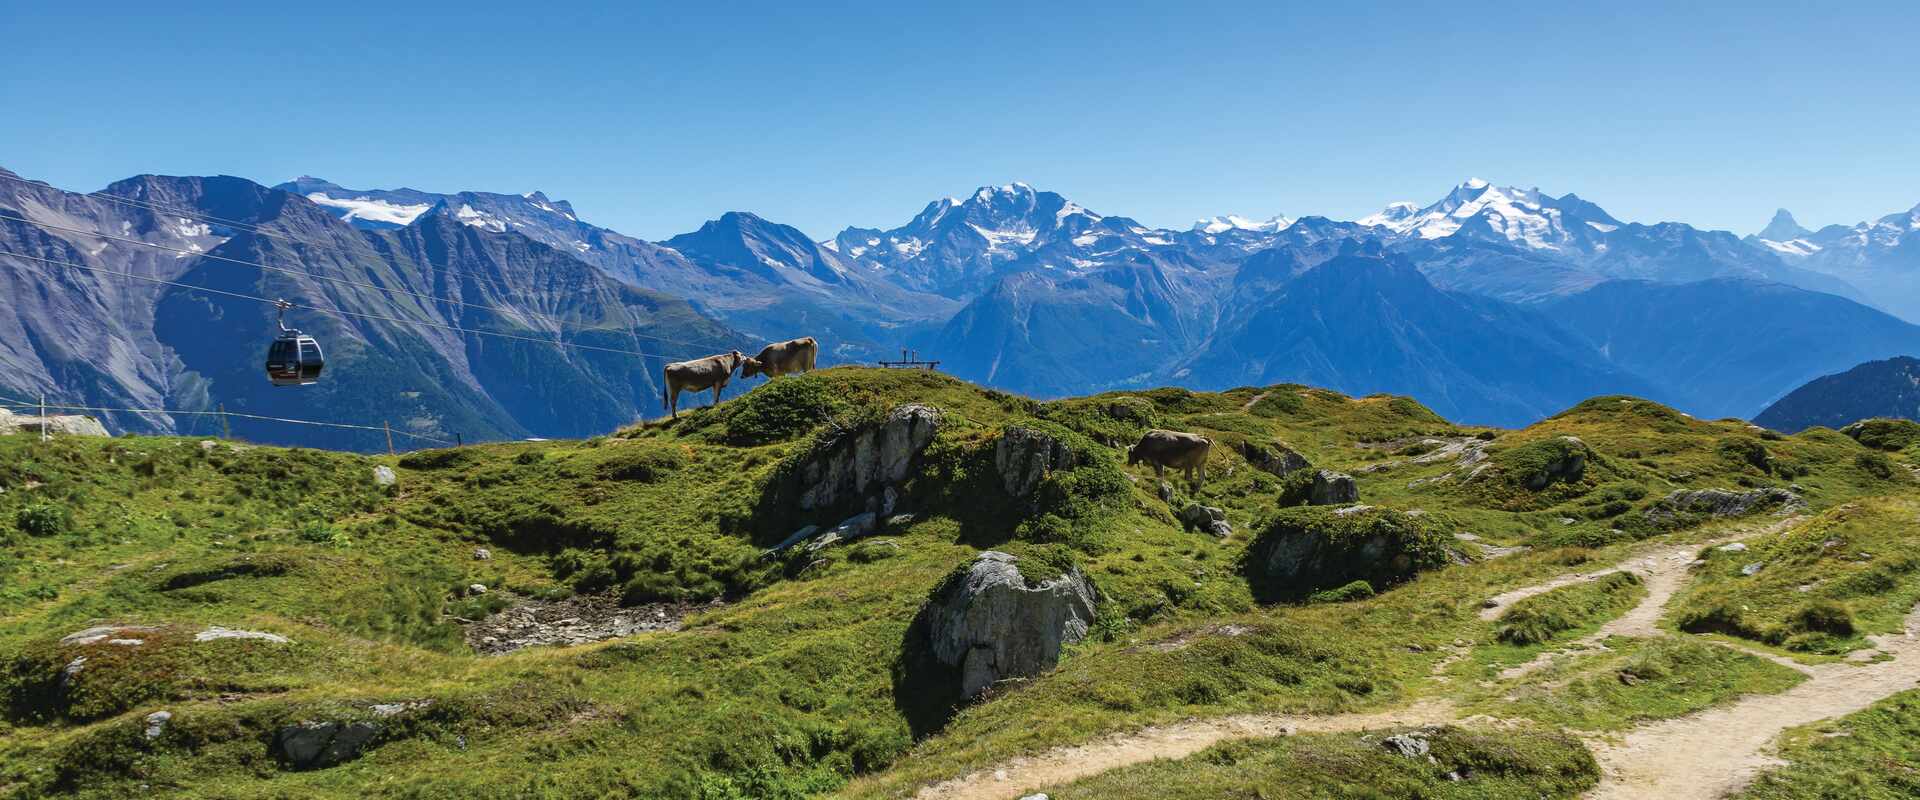 Riederalp landscape, Switzerland